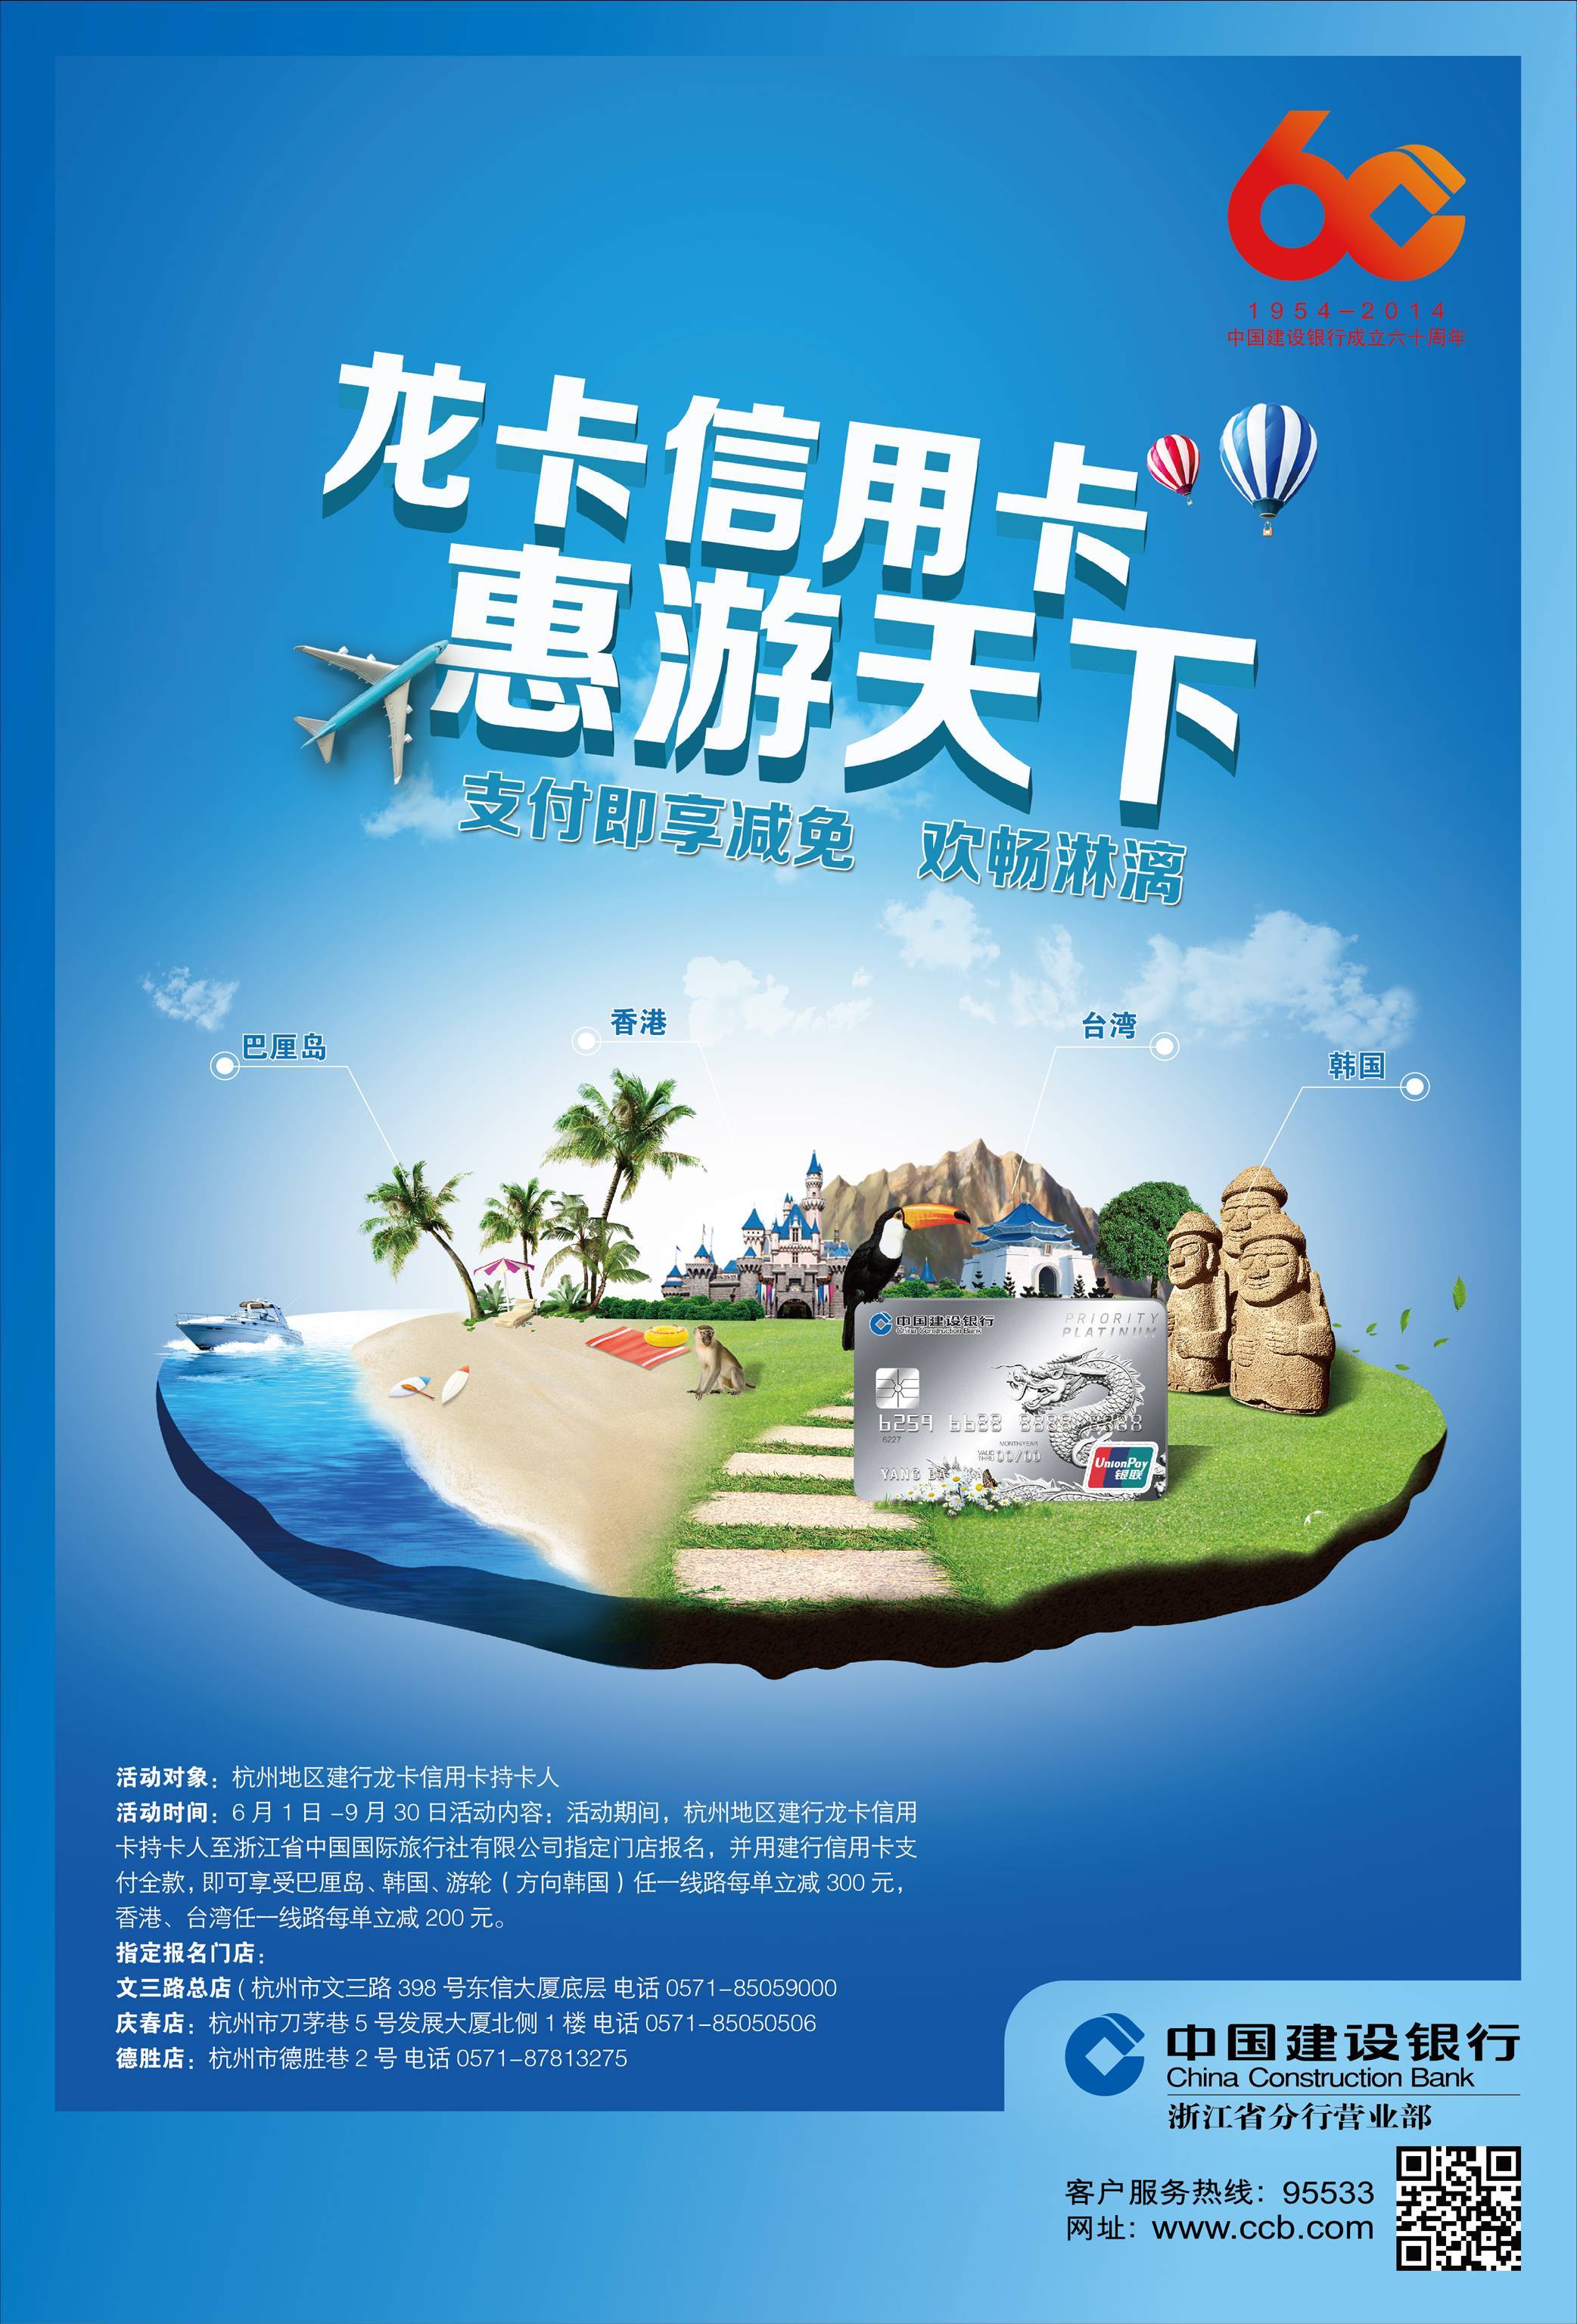 中国建设银行活动海报设计